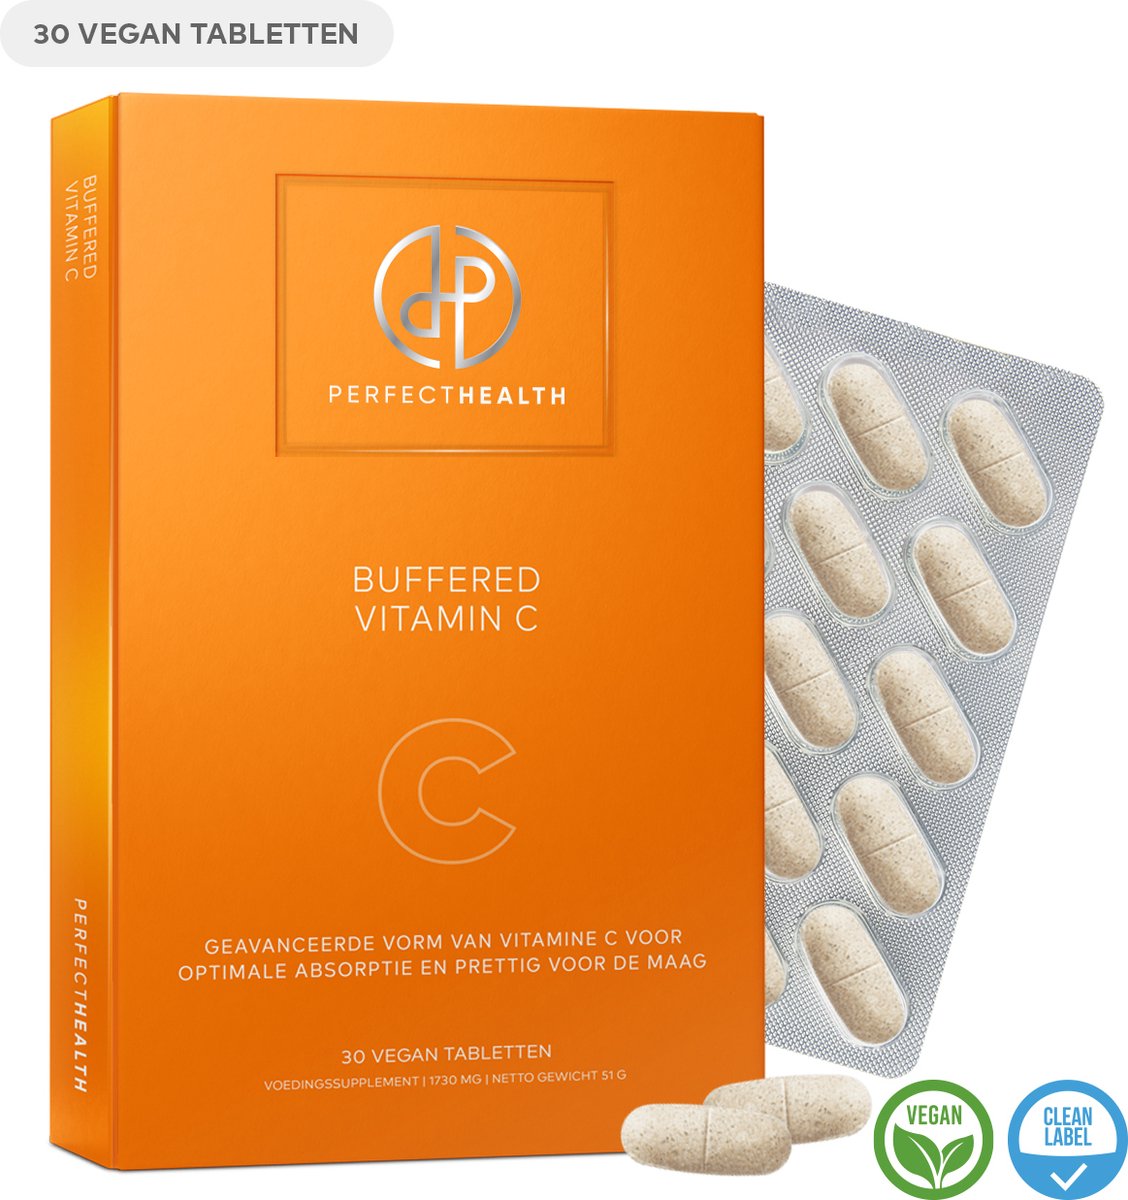 Perfect Health - Buffered Vitamin C - Voor immuunsysteem, bloedvaten, huid en energiehuishouding - 30 tabletten - Hoog gedoseerd - Vegan